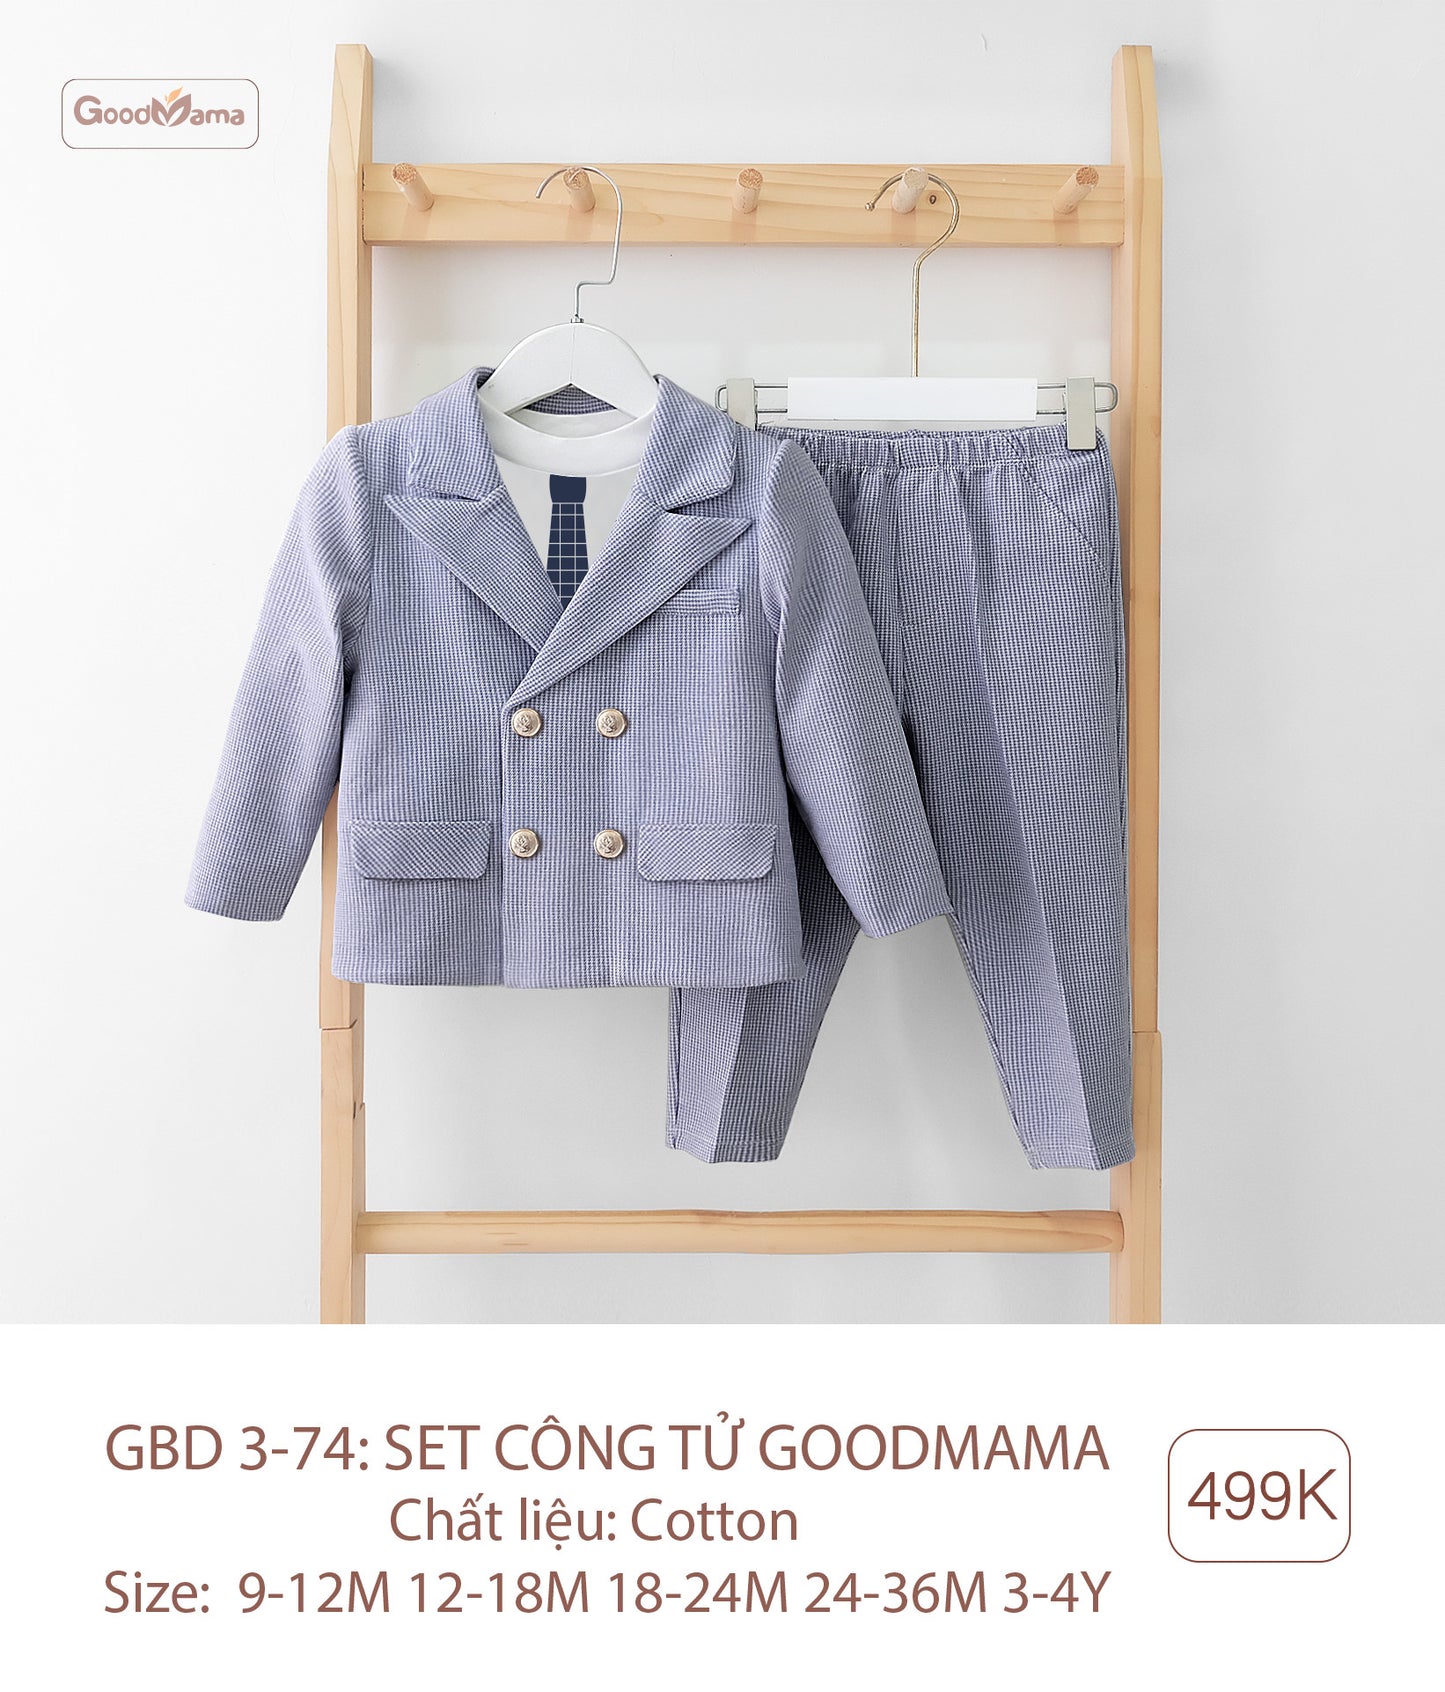 GBD3-74 Sét Công Tử Goodmama Chất Liệu Cotton